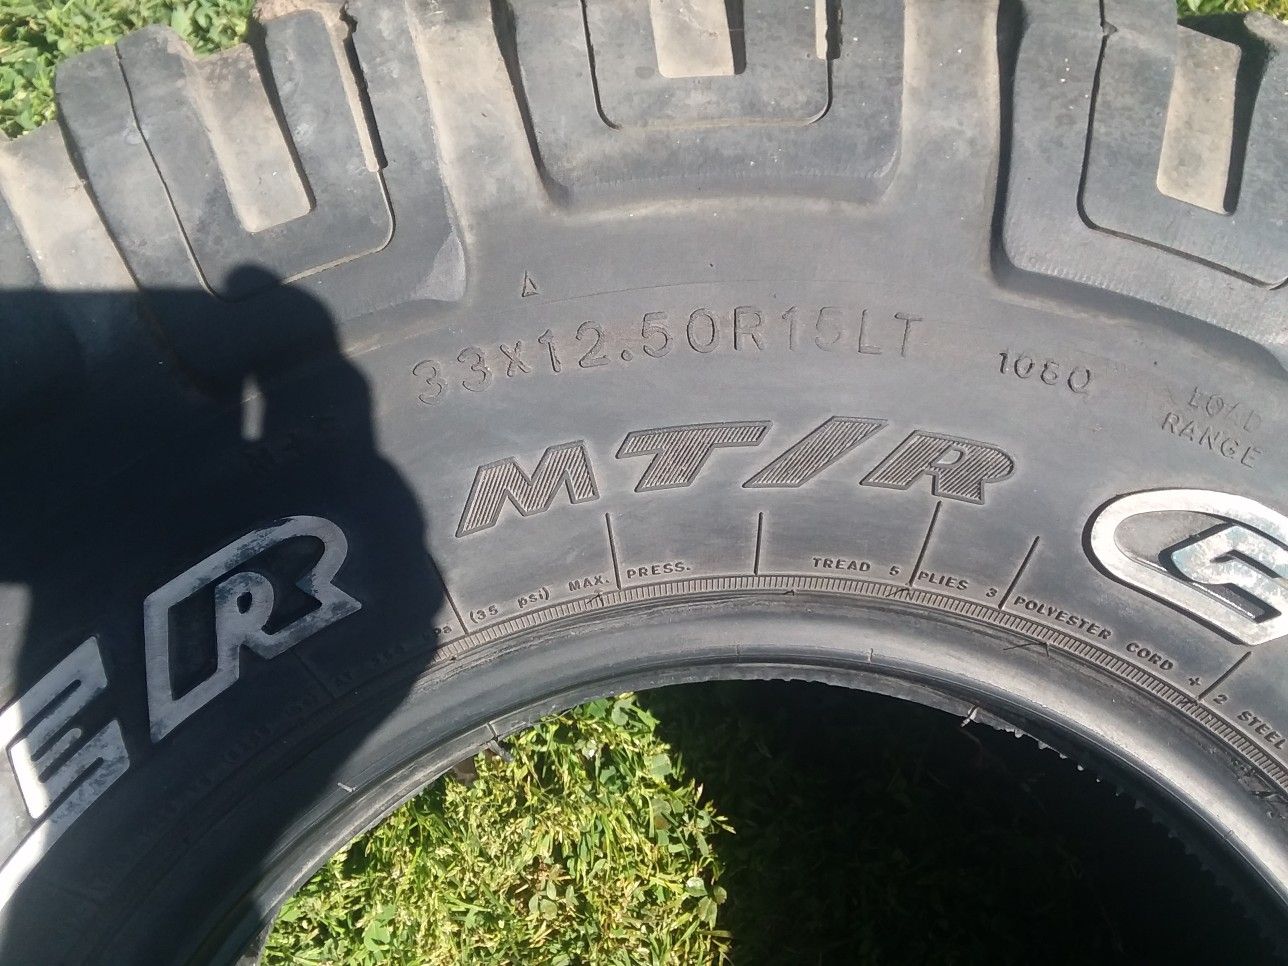 33x12.5x15 tire